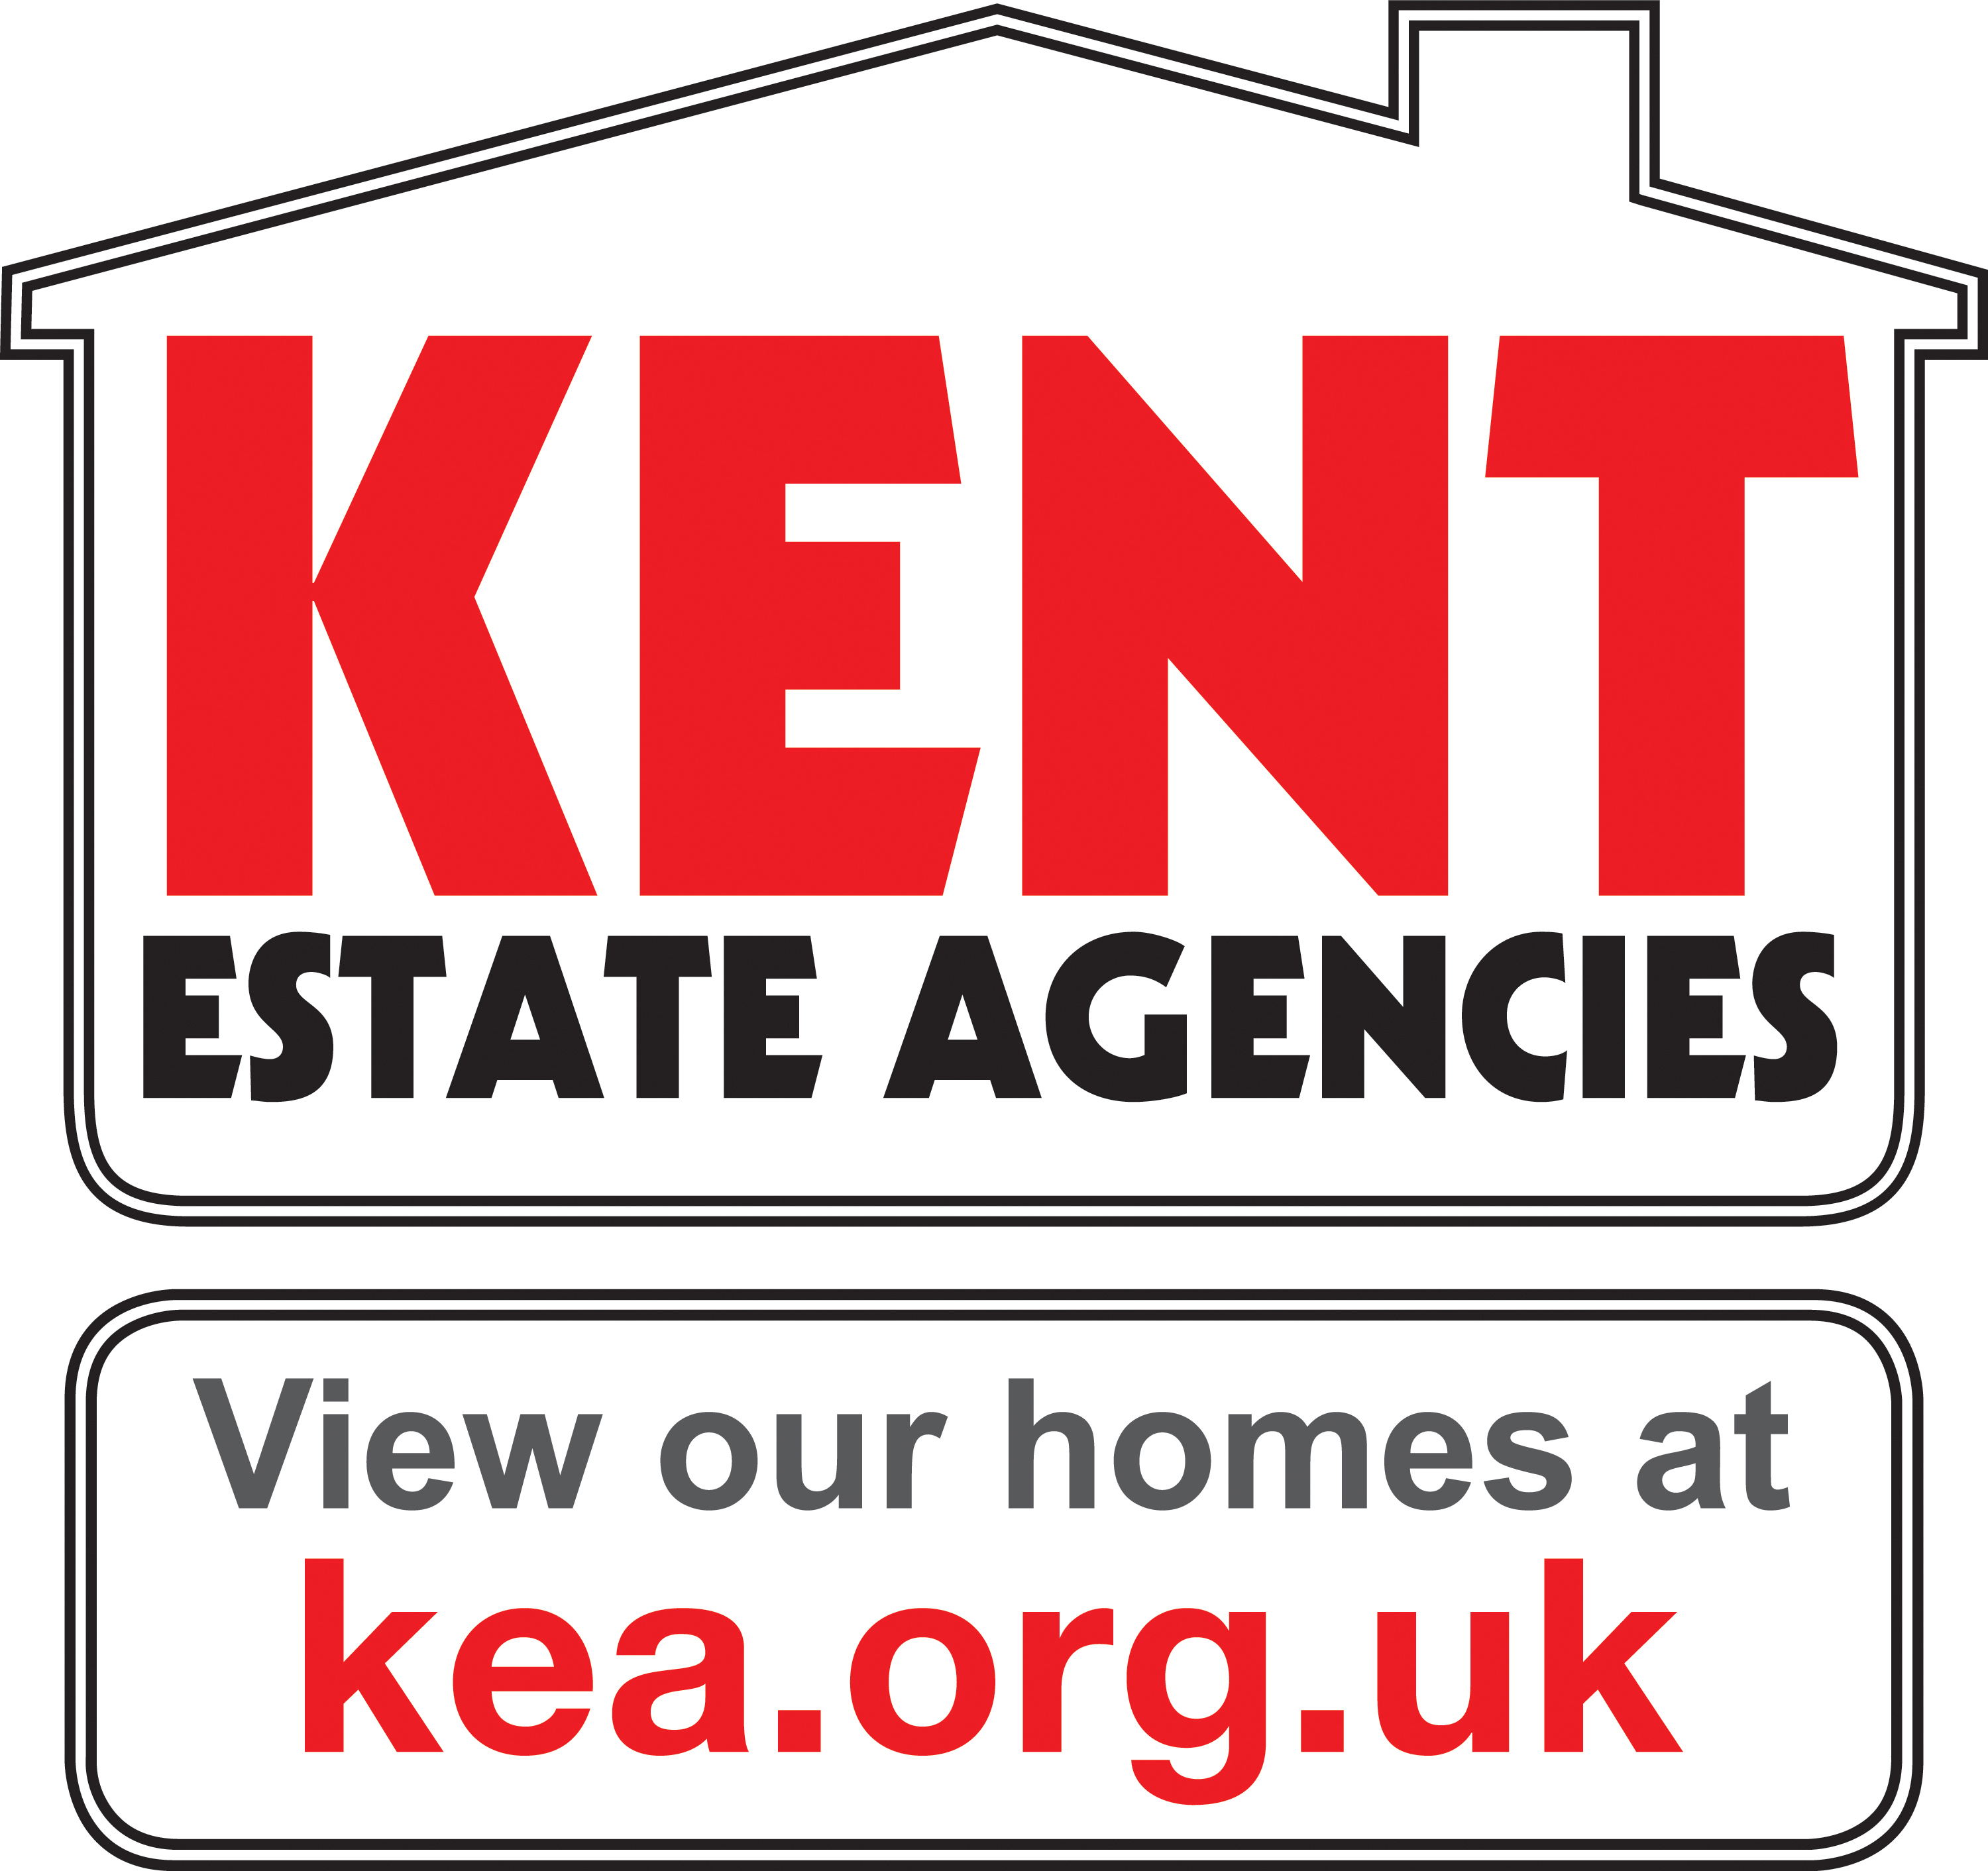 Kent Estate Agencies